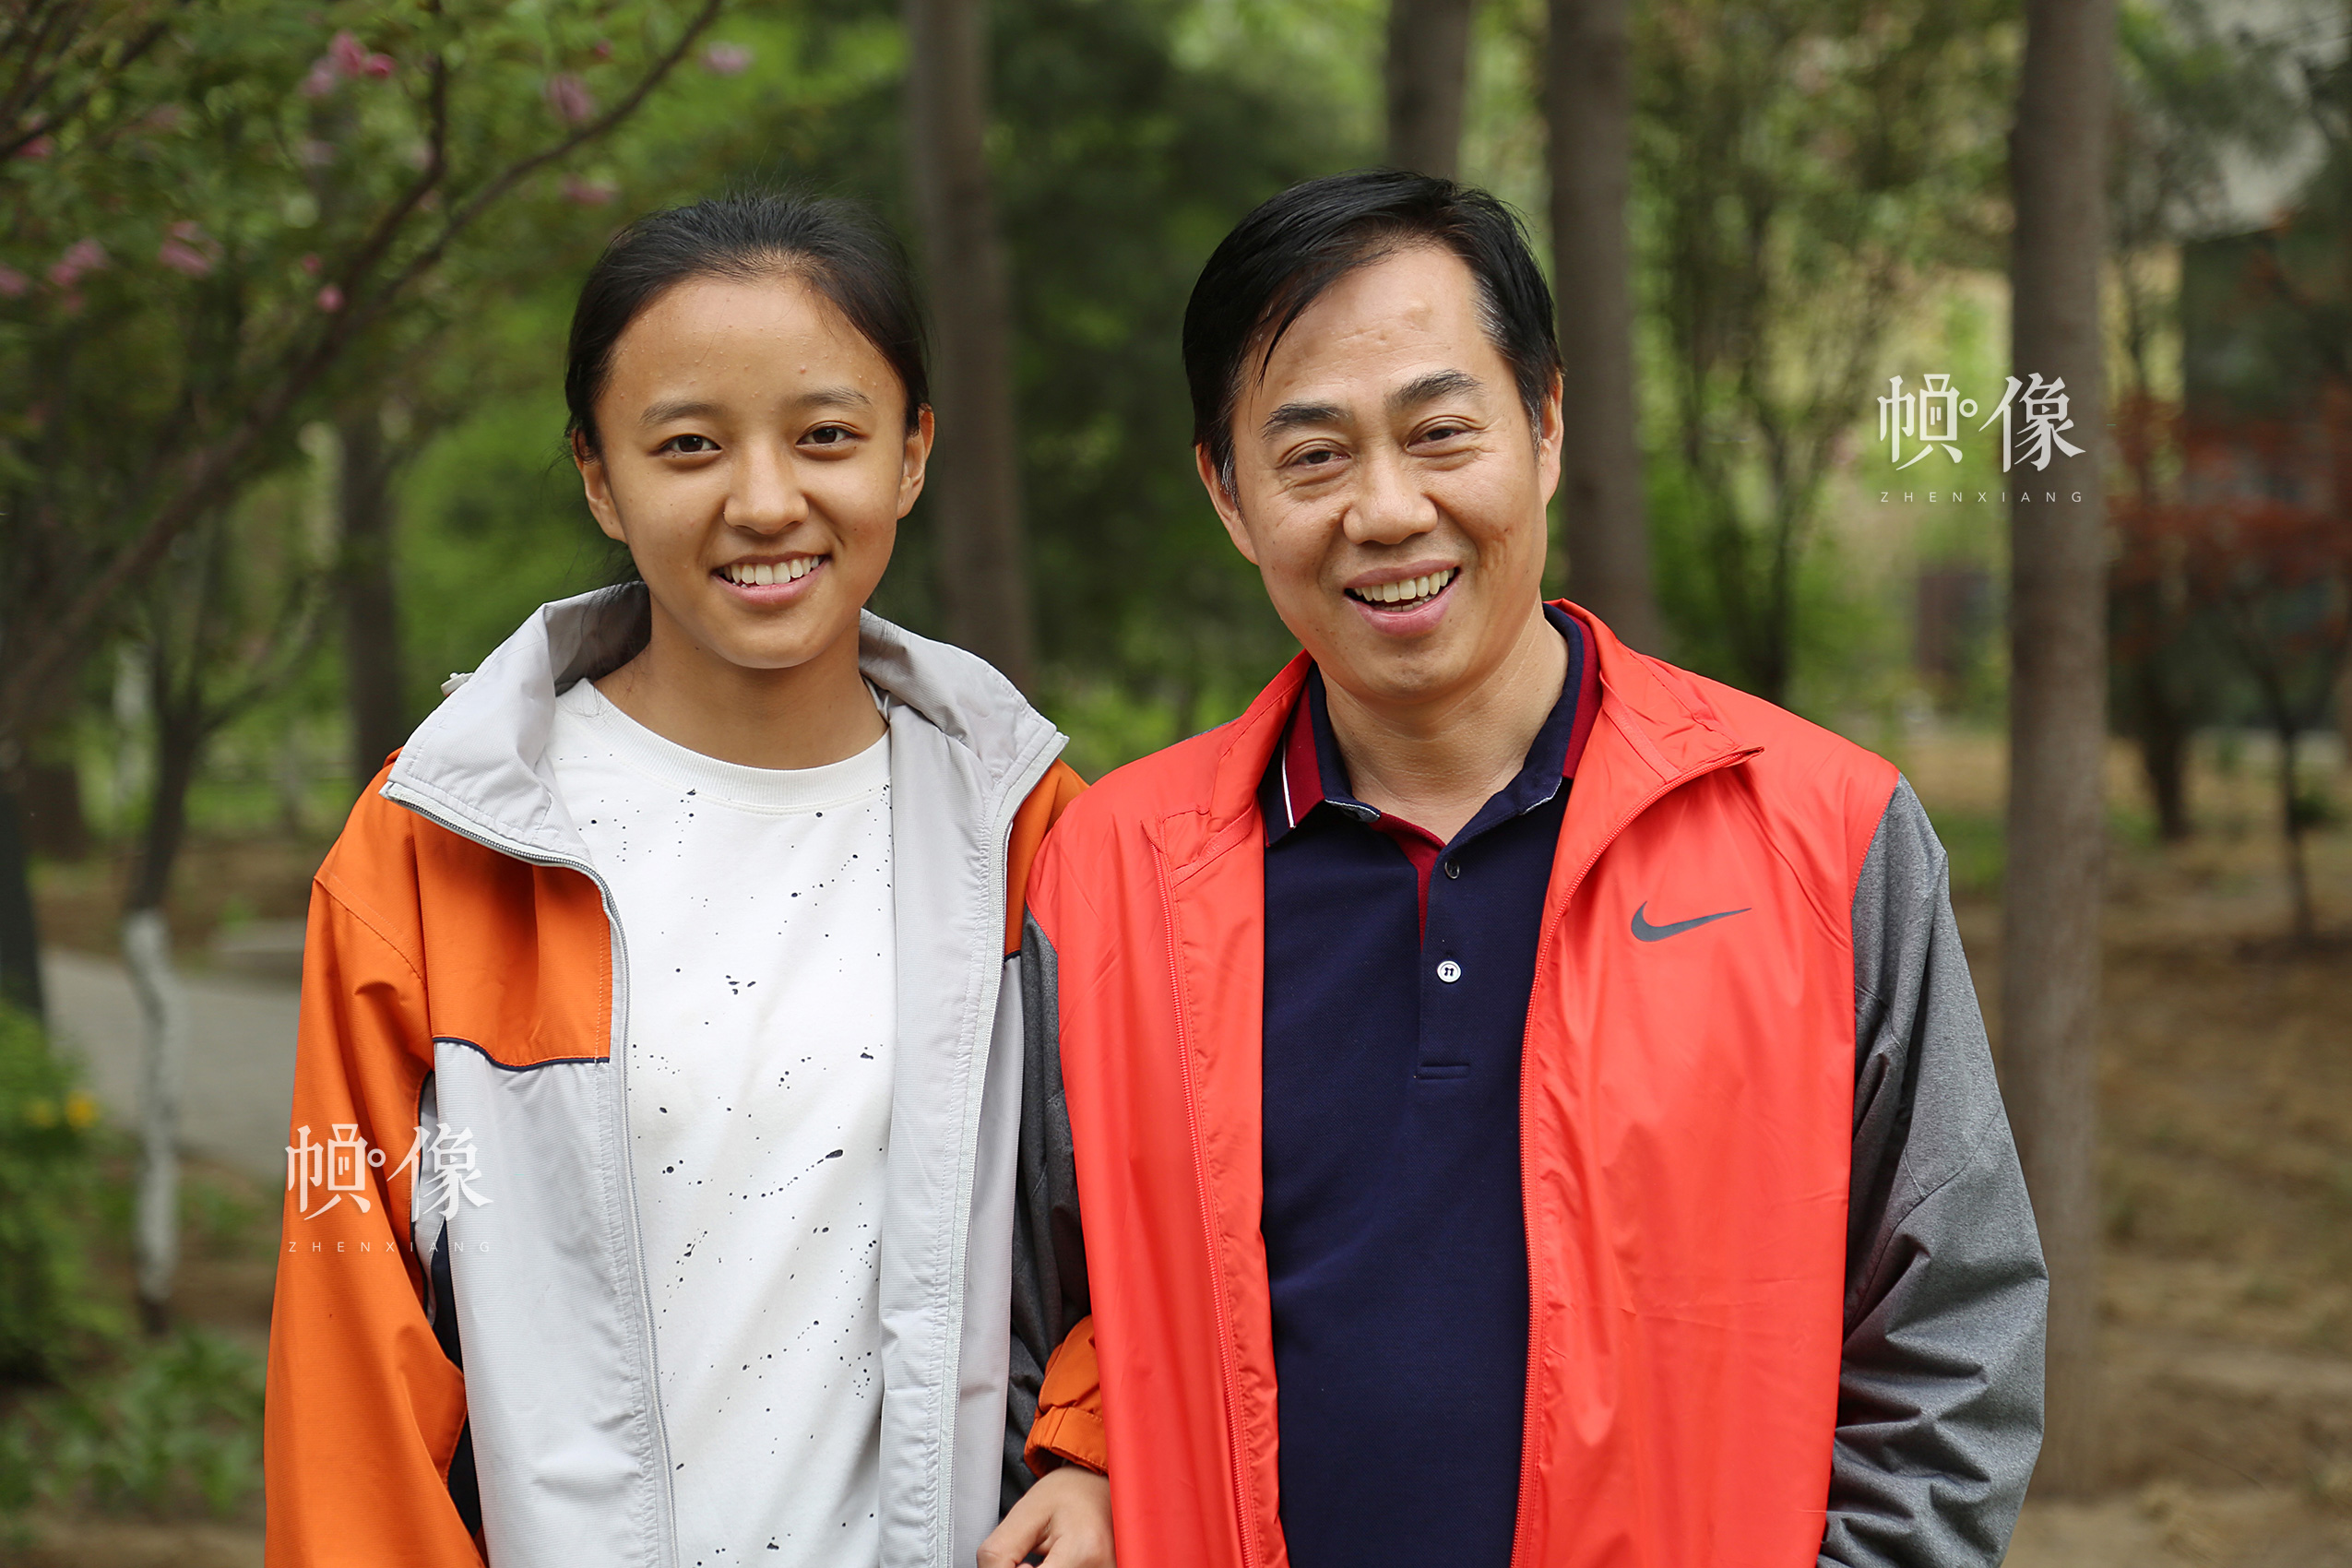 2017年4月8日，德乾尕毛與助養爸爸站在一起,身高基本相同，德乾尕毛説自己之所以長這麼高都歸功於爸爸媽媽無微不至的呵護。中國網記者 黃富友 攝  